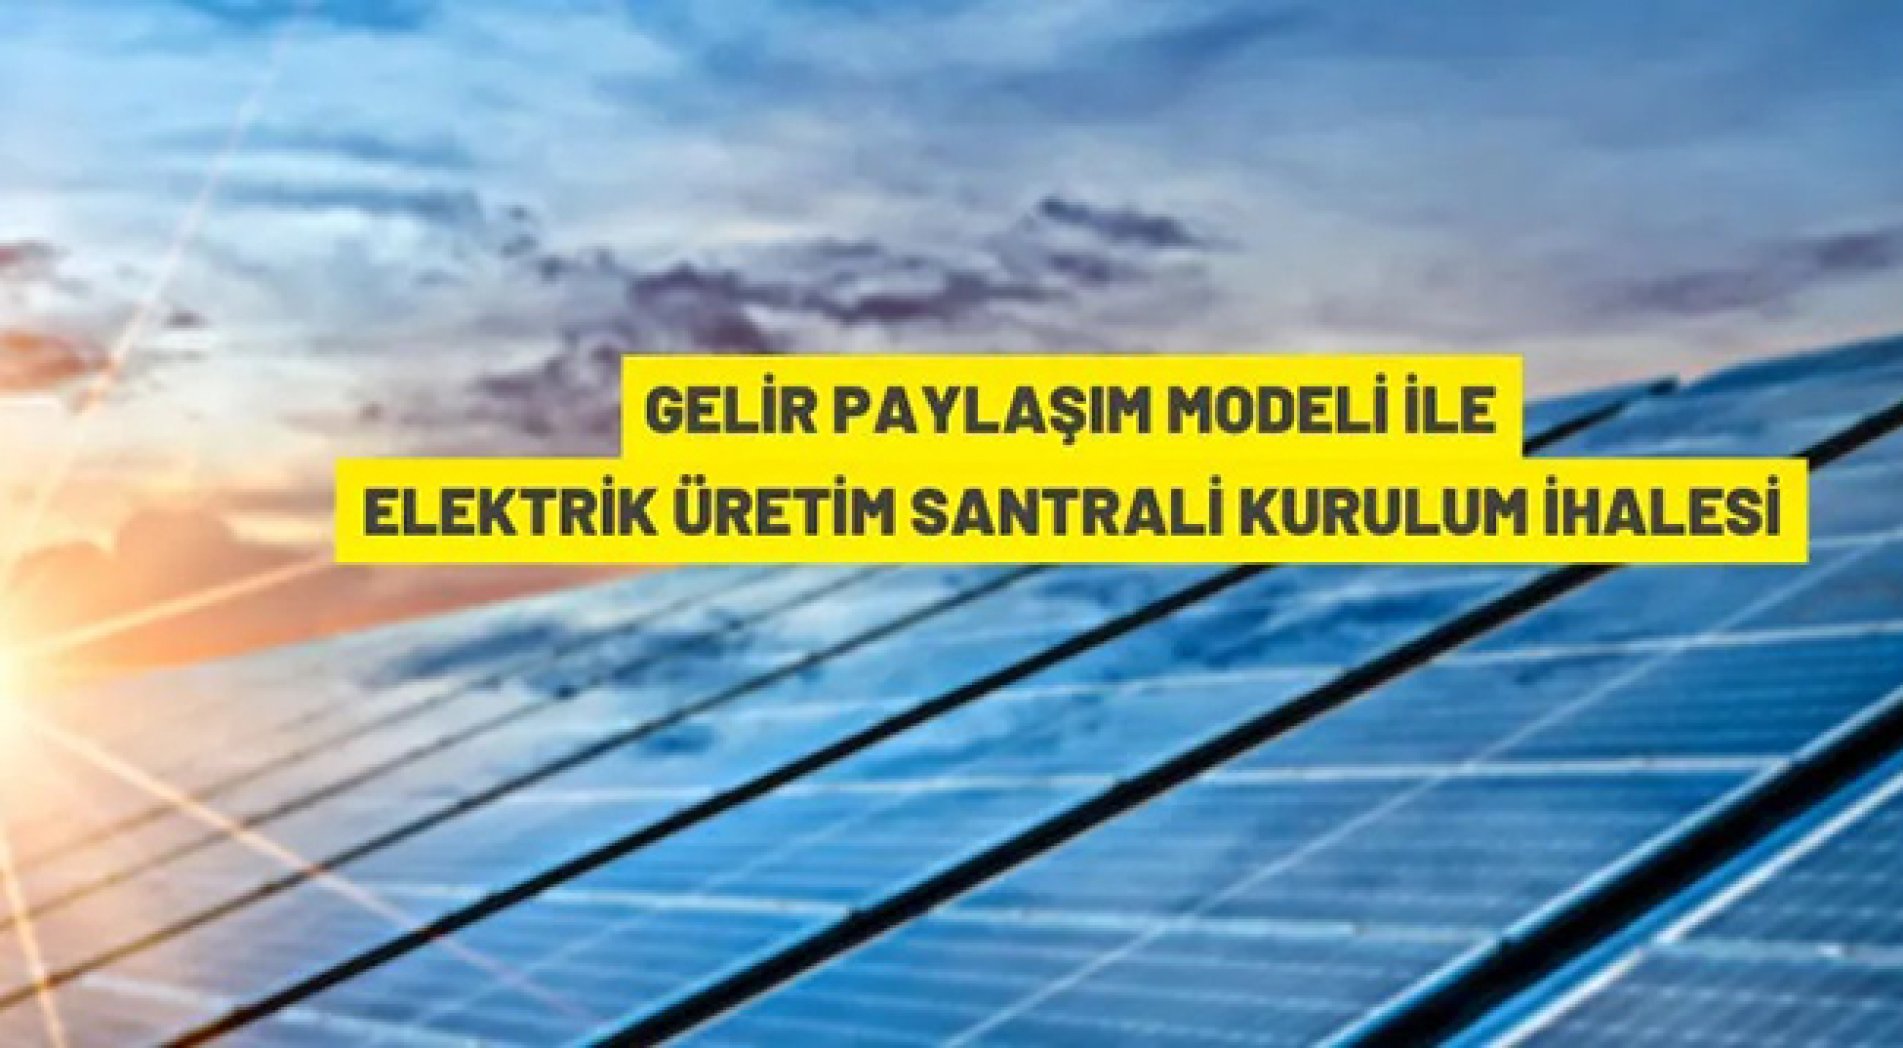 Güneş enerjisinden elektrik üretim santrali kurulum ve işletme ihalesi